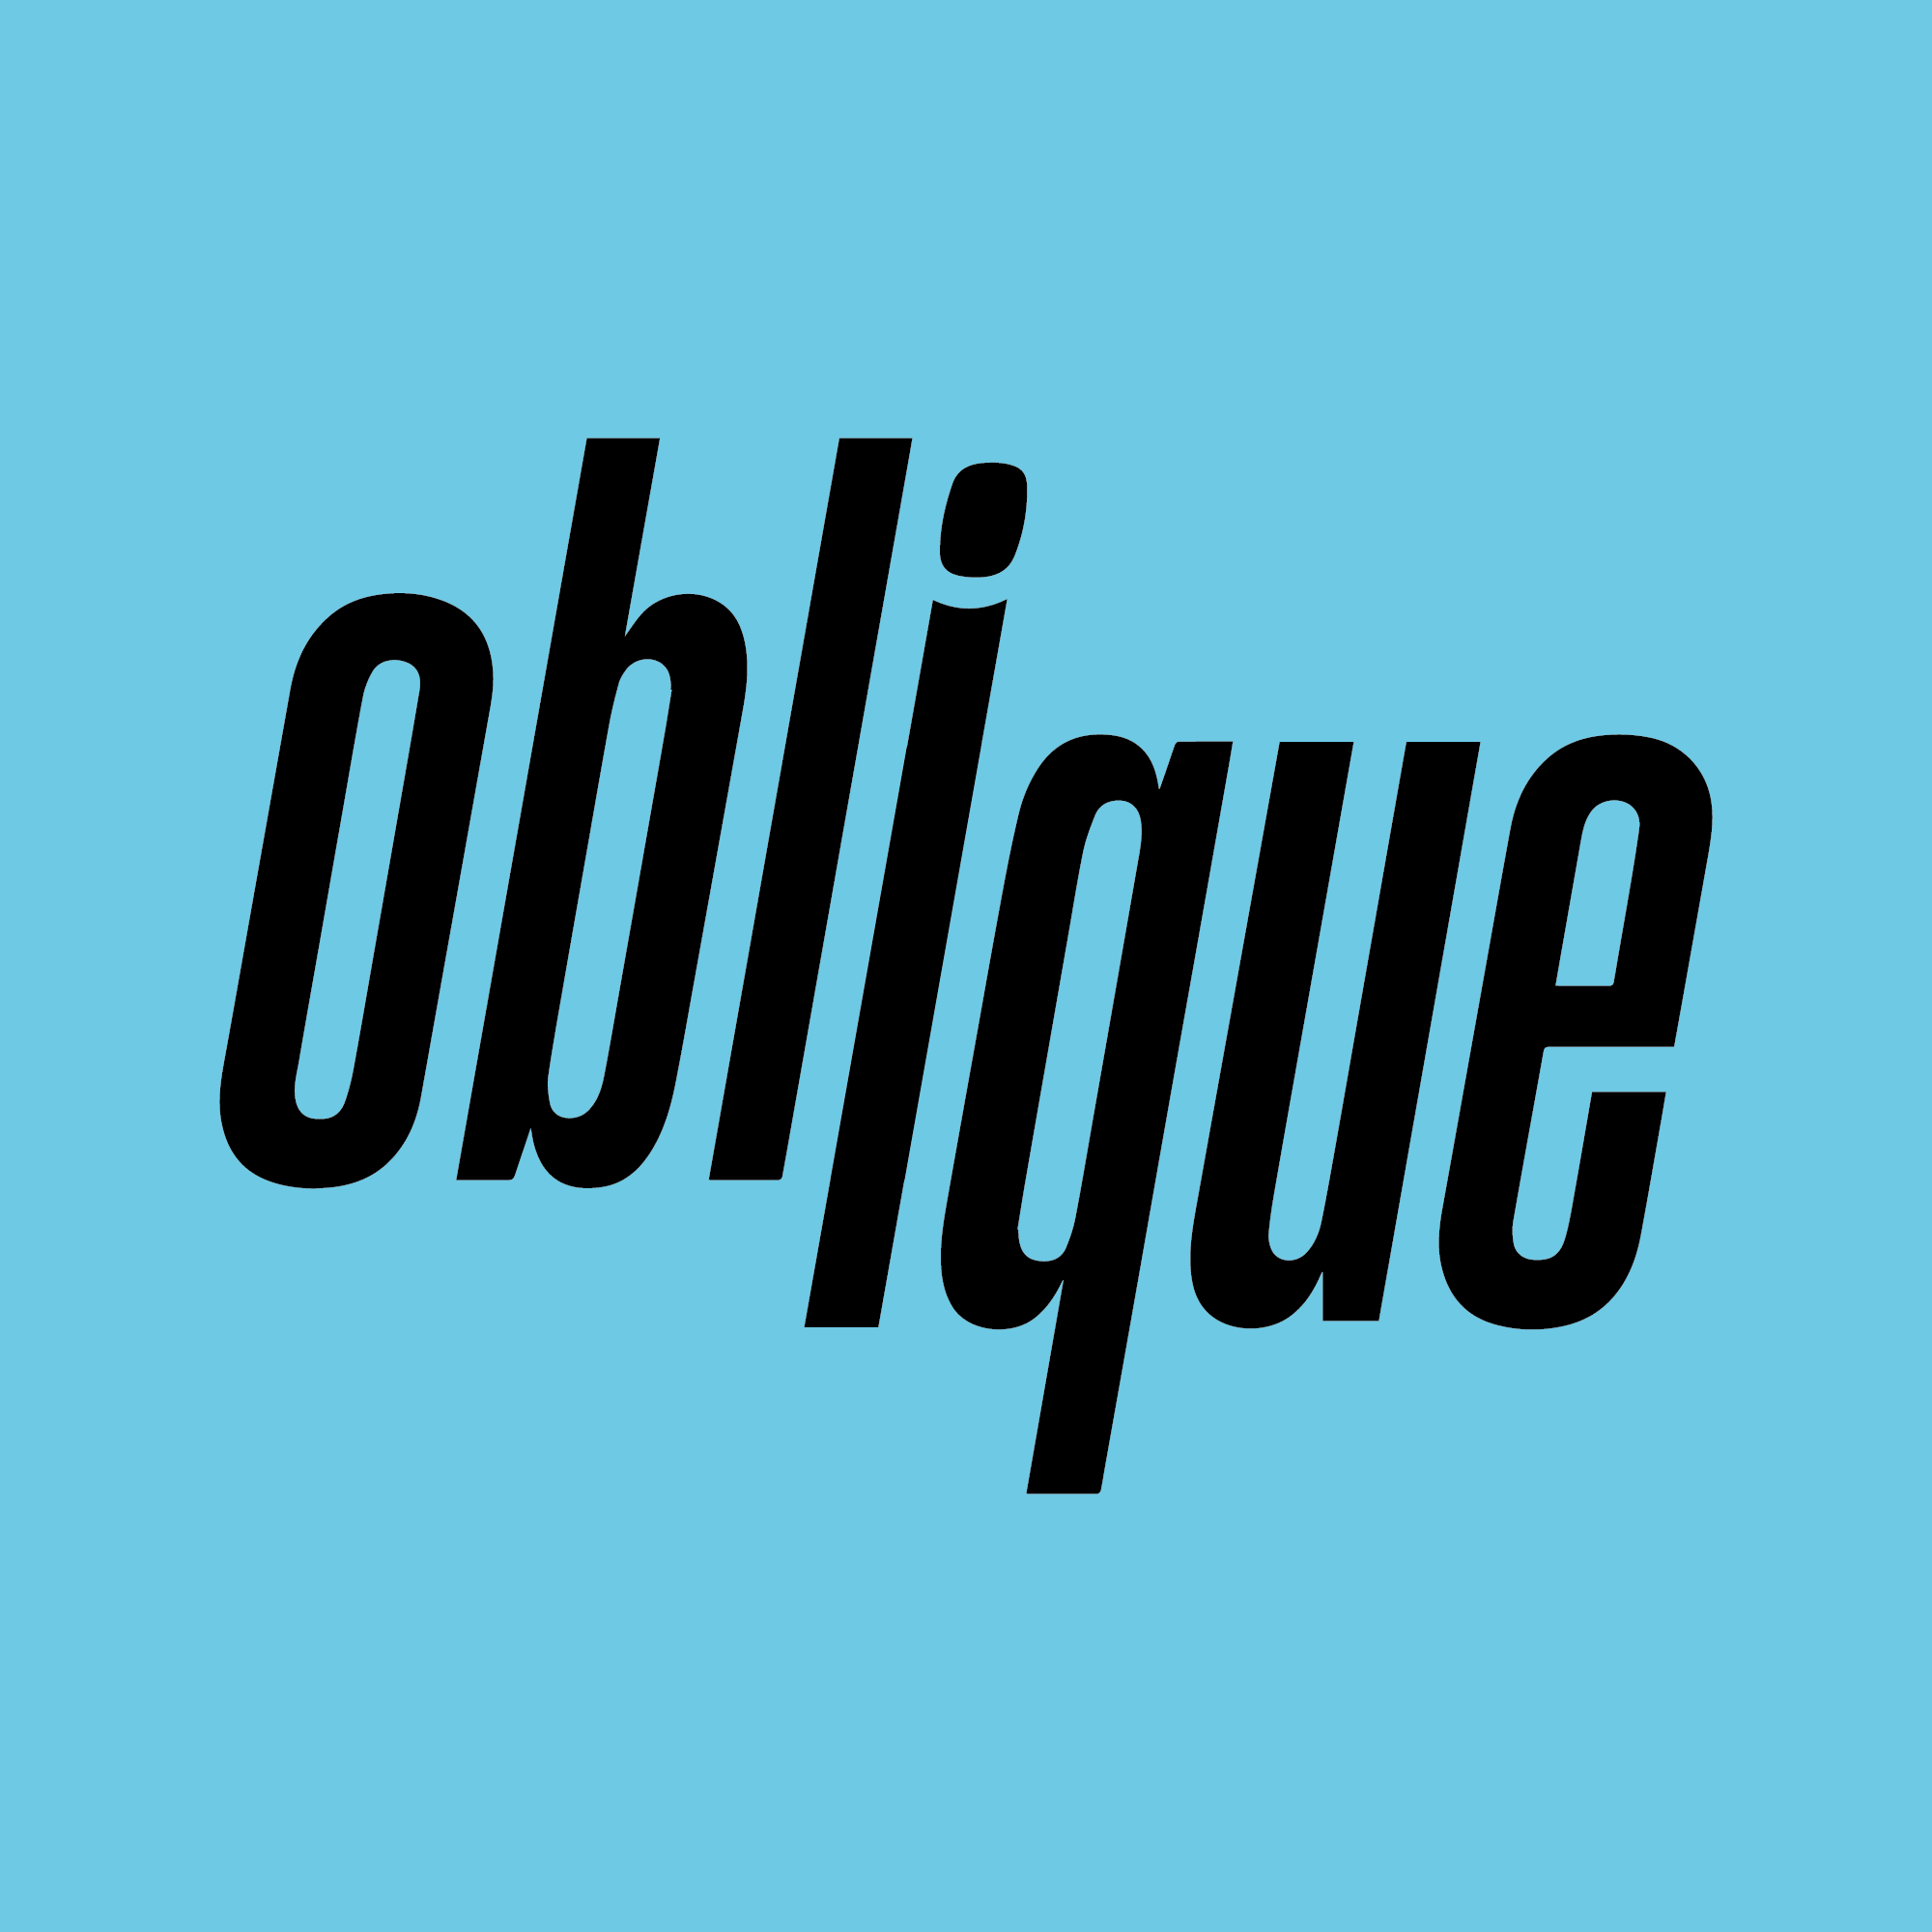 The Oblique Dispatch